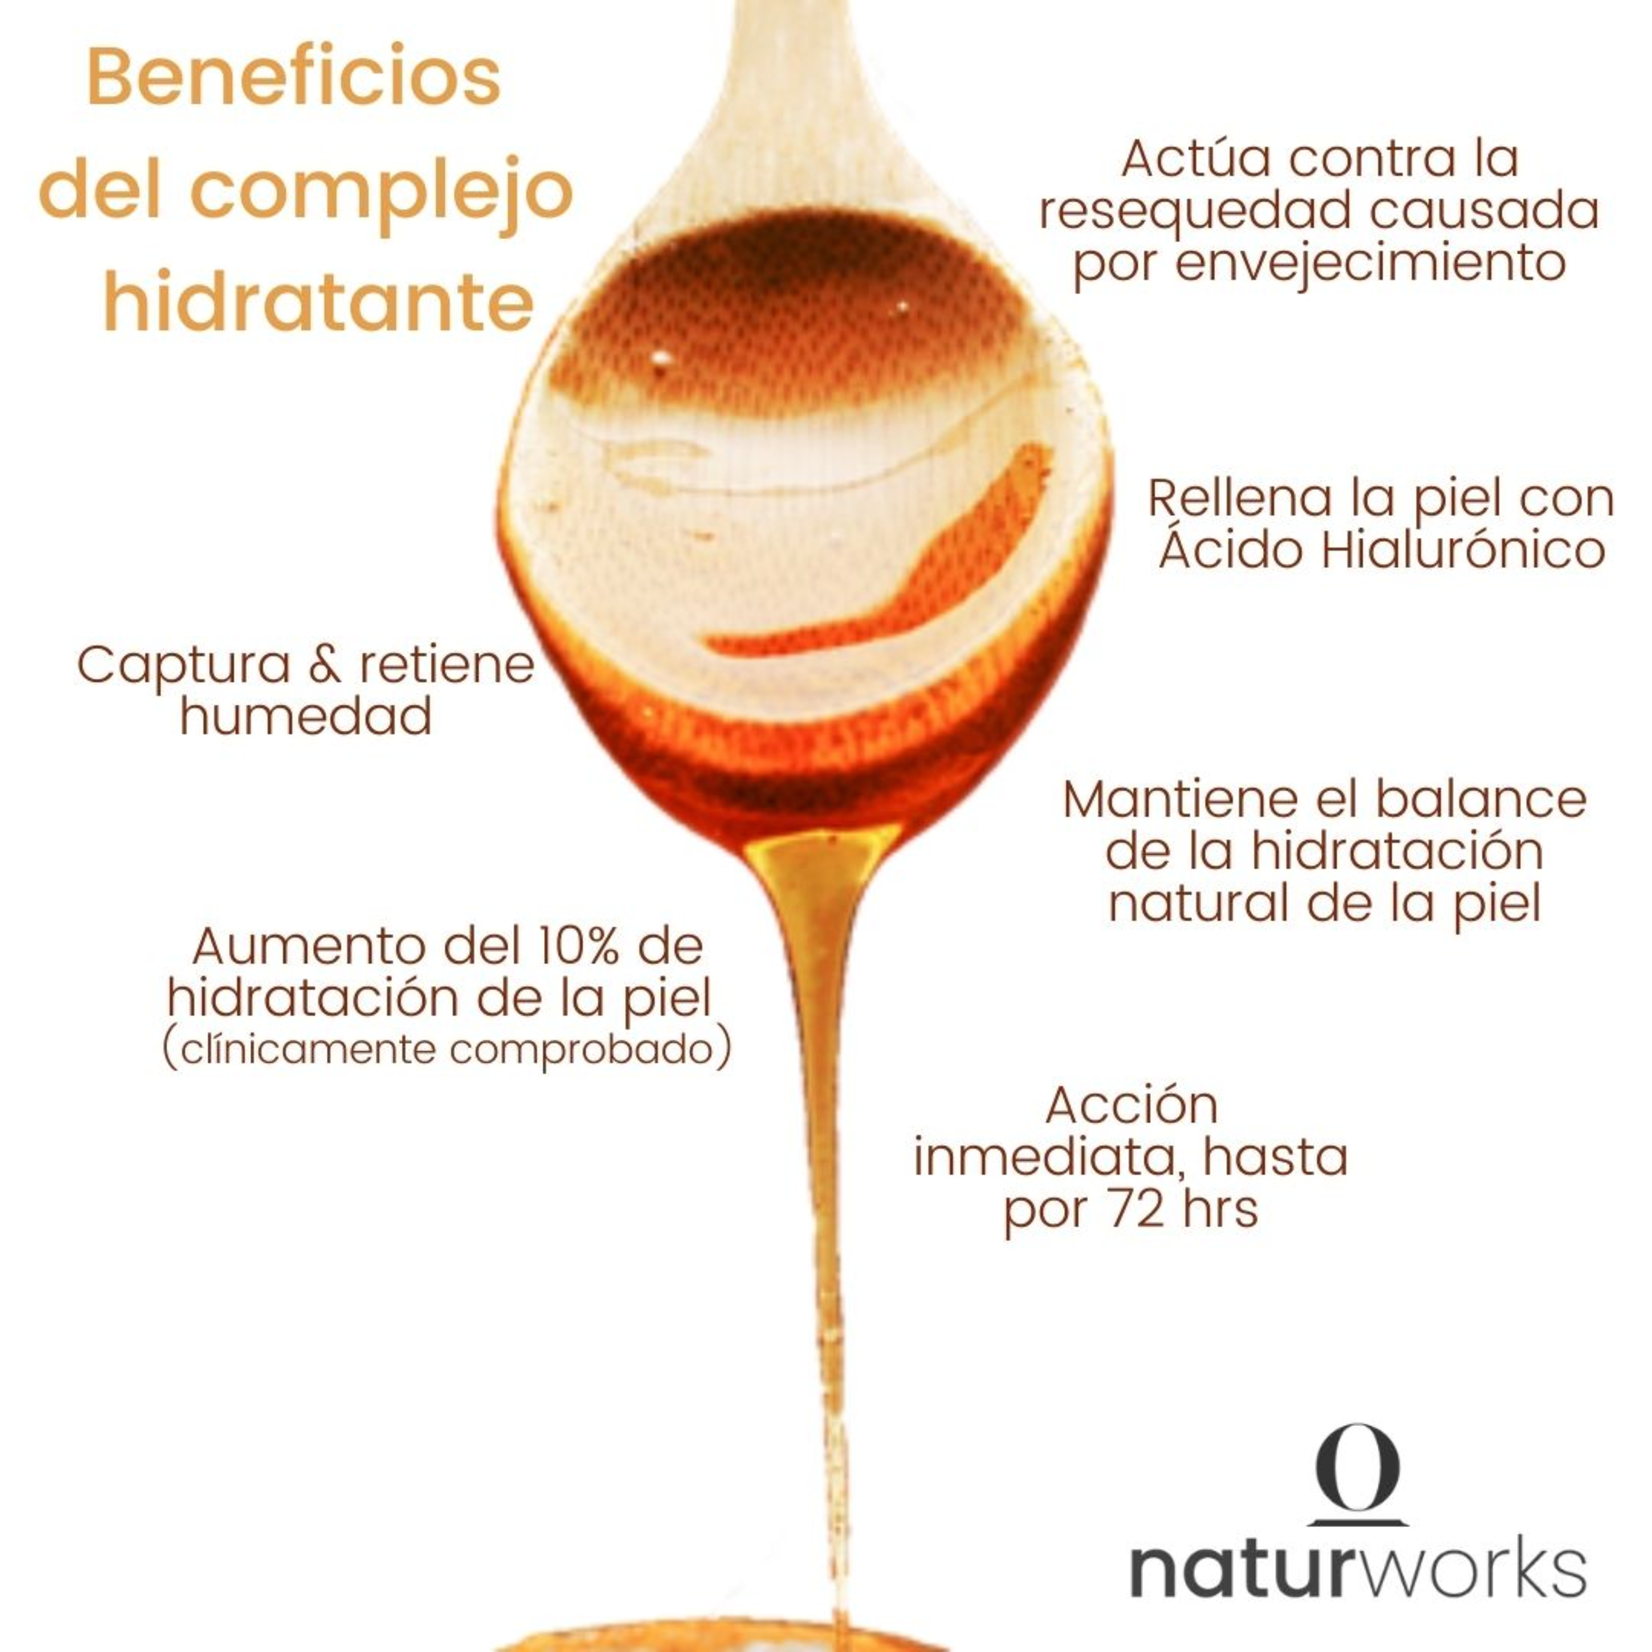 Naturworks Gel fijador de cabello Naturworks Fijacion media con extracto frutal hidratante 120 ml